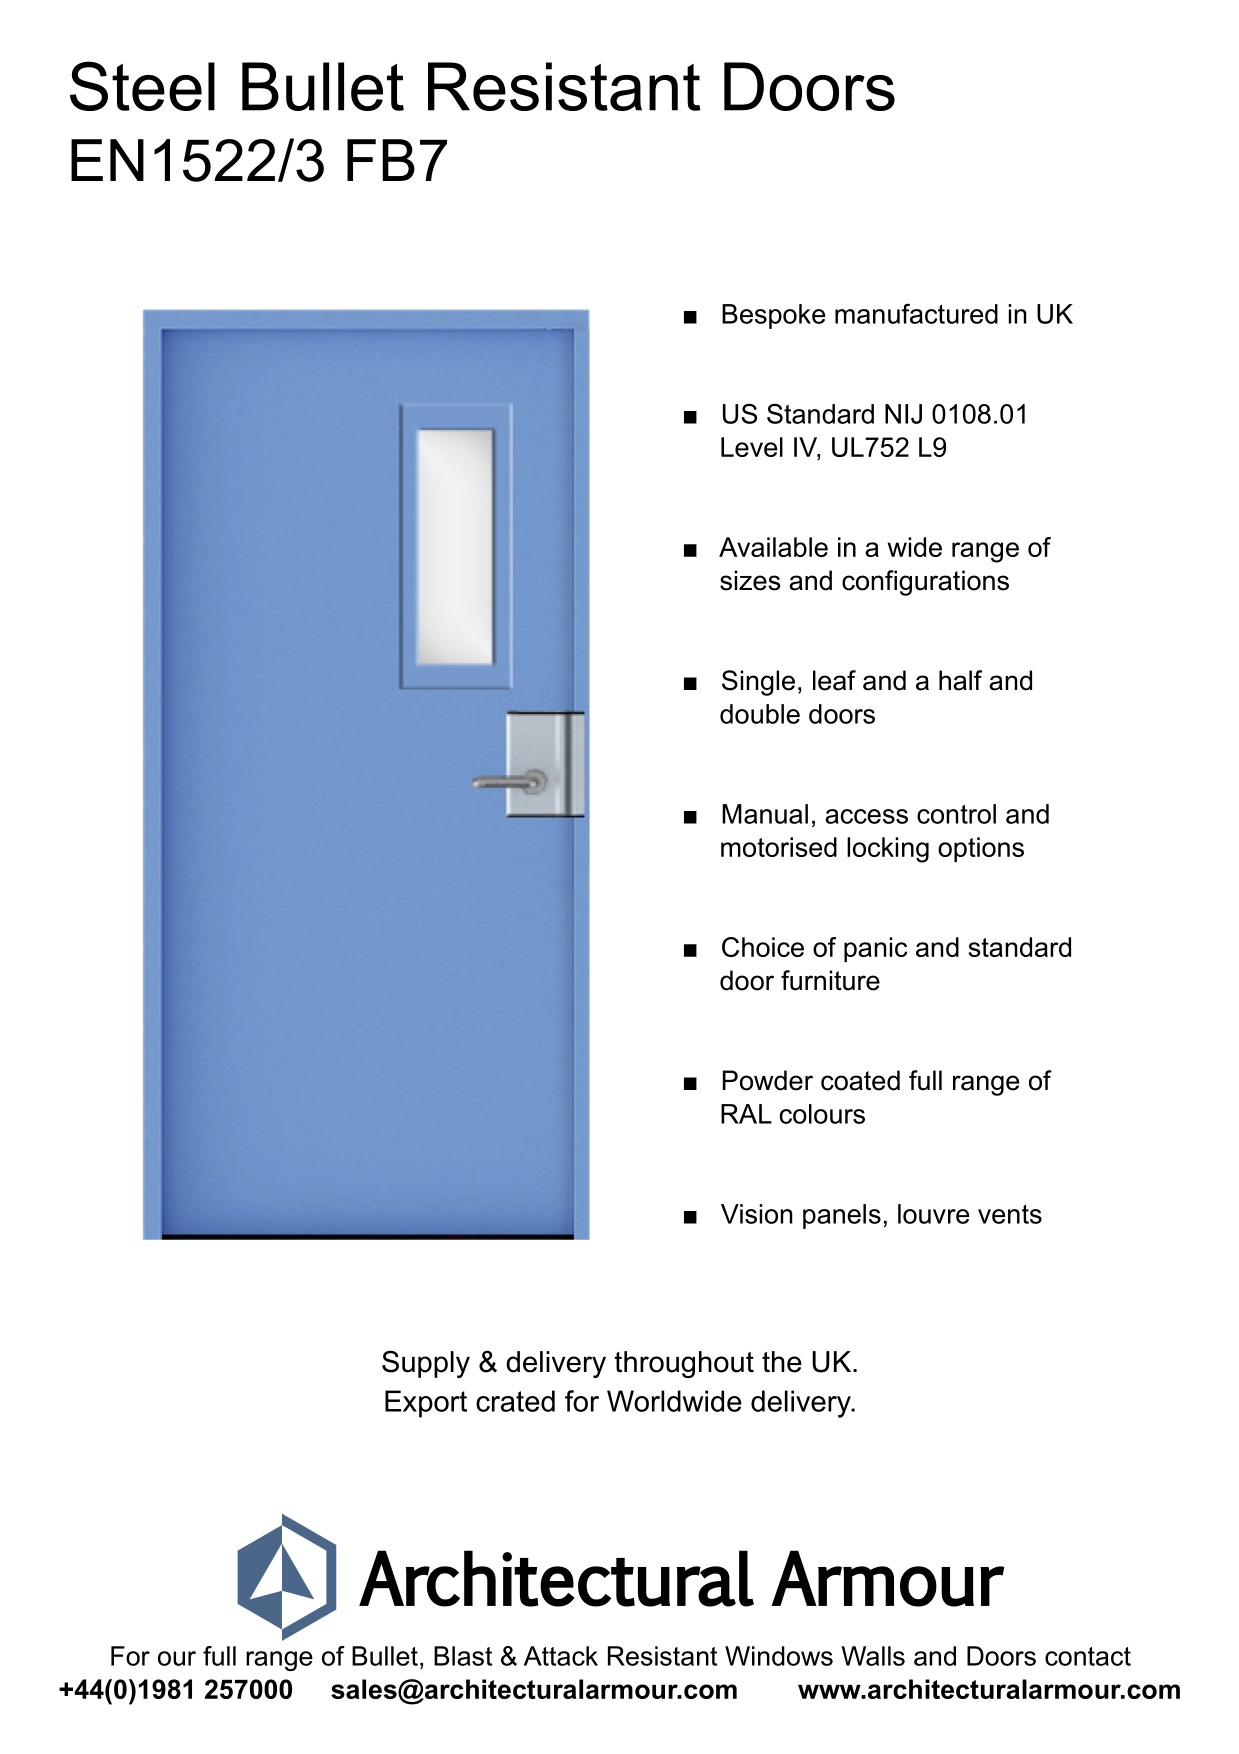 EN1522-3-FB7-Single-Slim-Vision-Panel-Bullet-Resistant-Steel-Door